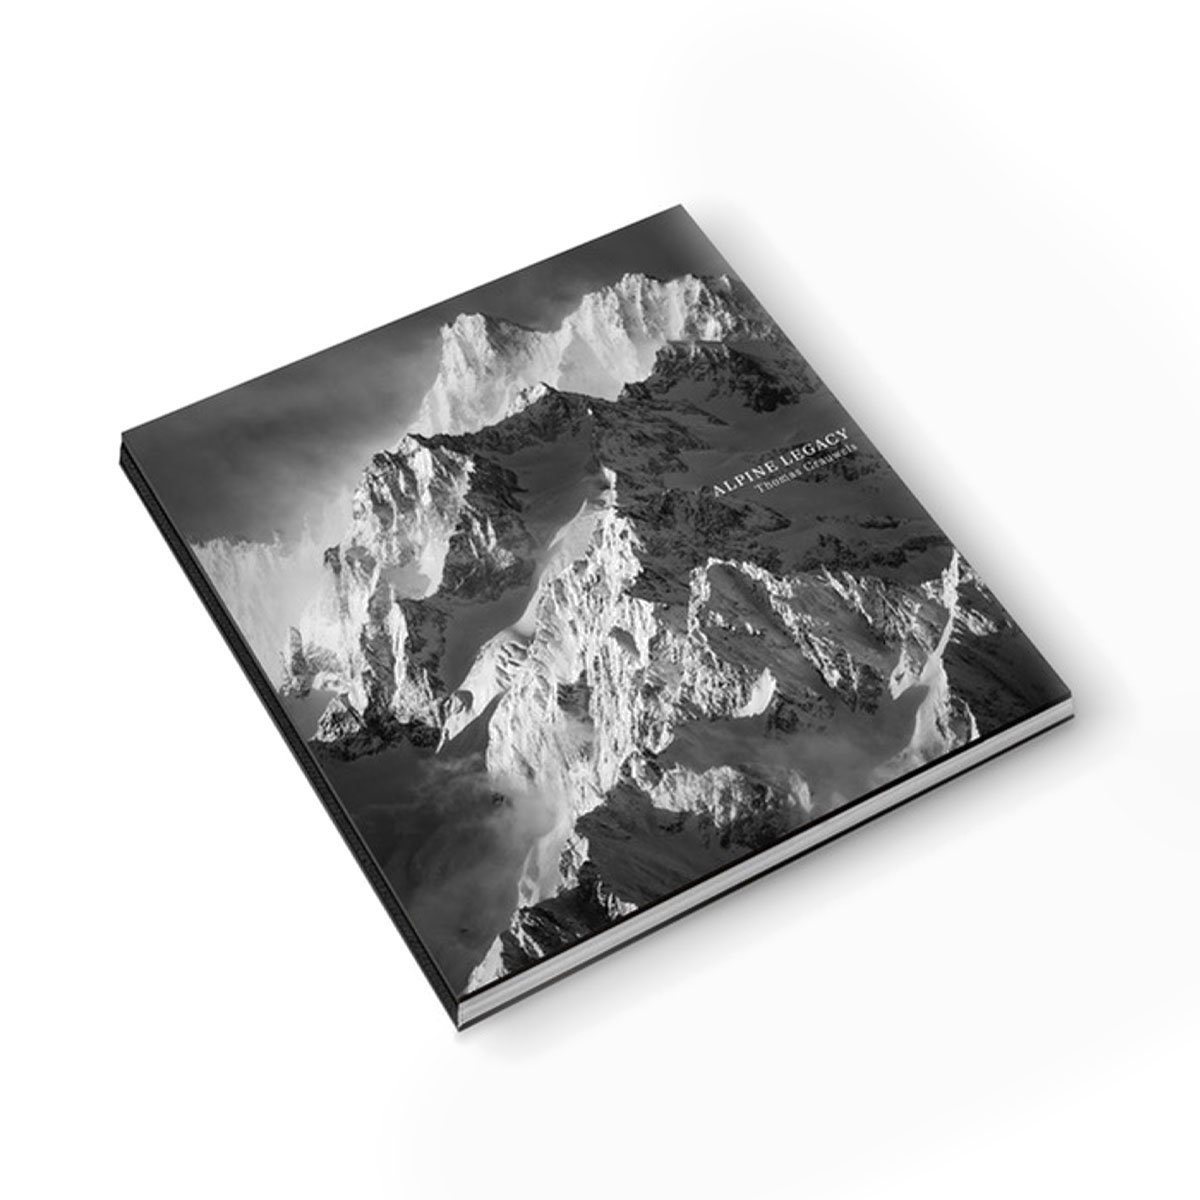 Alpine Legacy: Das Erbe der Alpen in limitierter Auflage, von Thomas Crauwels